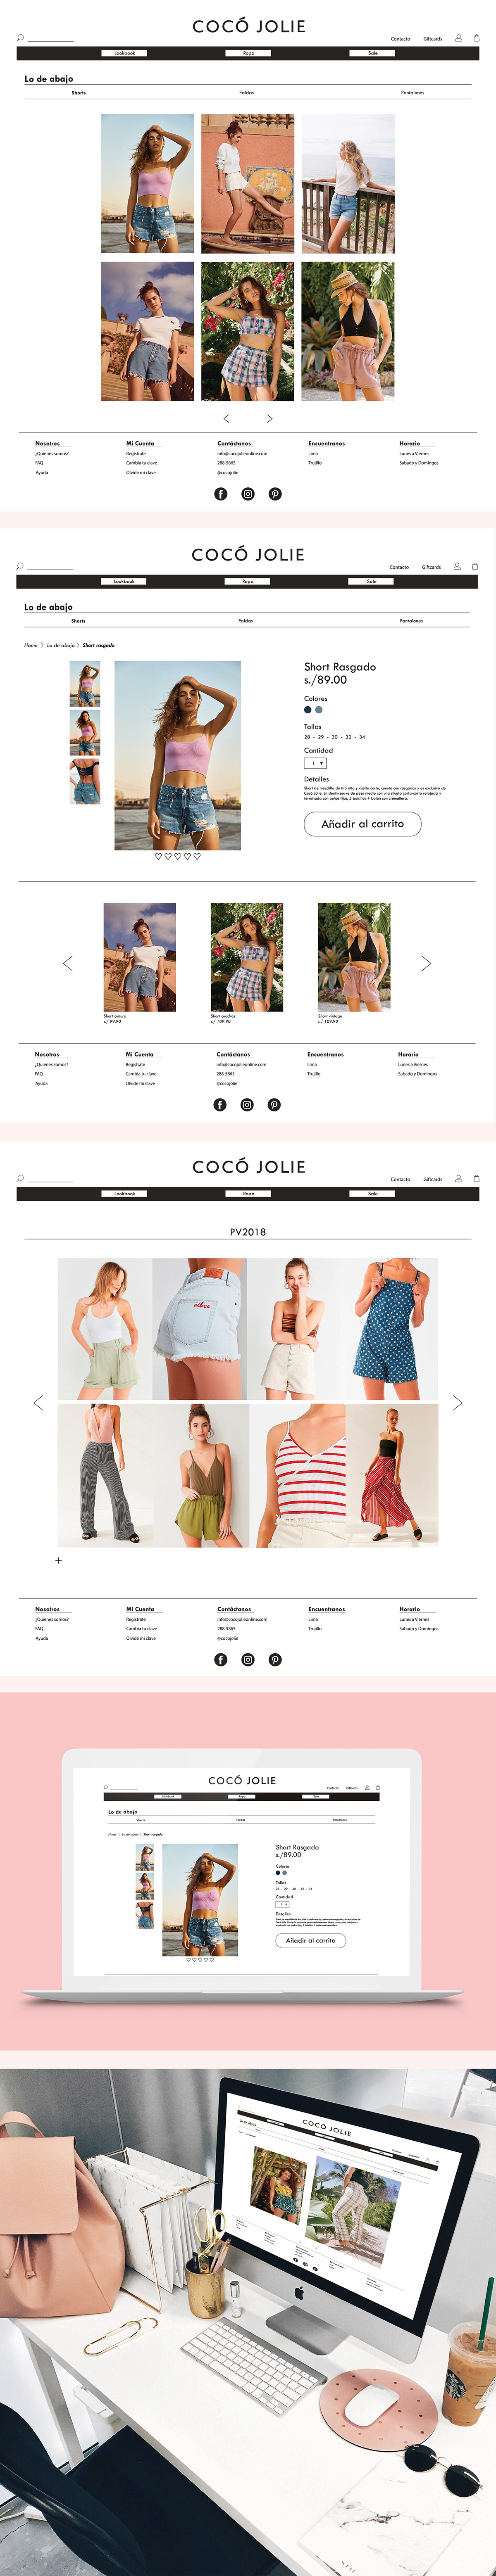 moda e-commerce Web diseño mockups movil Coco jolie